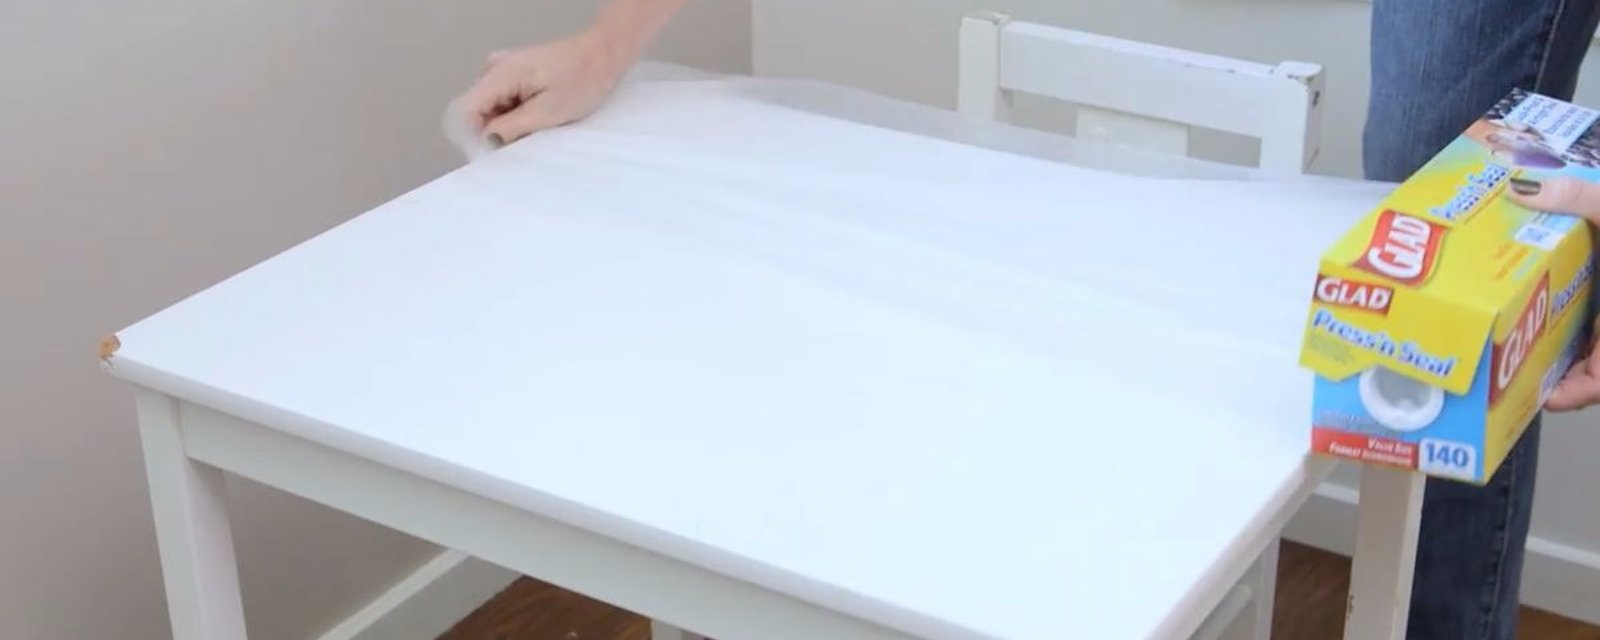 Avez-vous déjà pensé à recouvrir votre table avec une pellicule plastique? C’est pourtant un truc brillant!